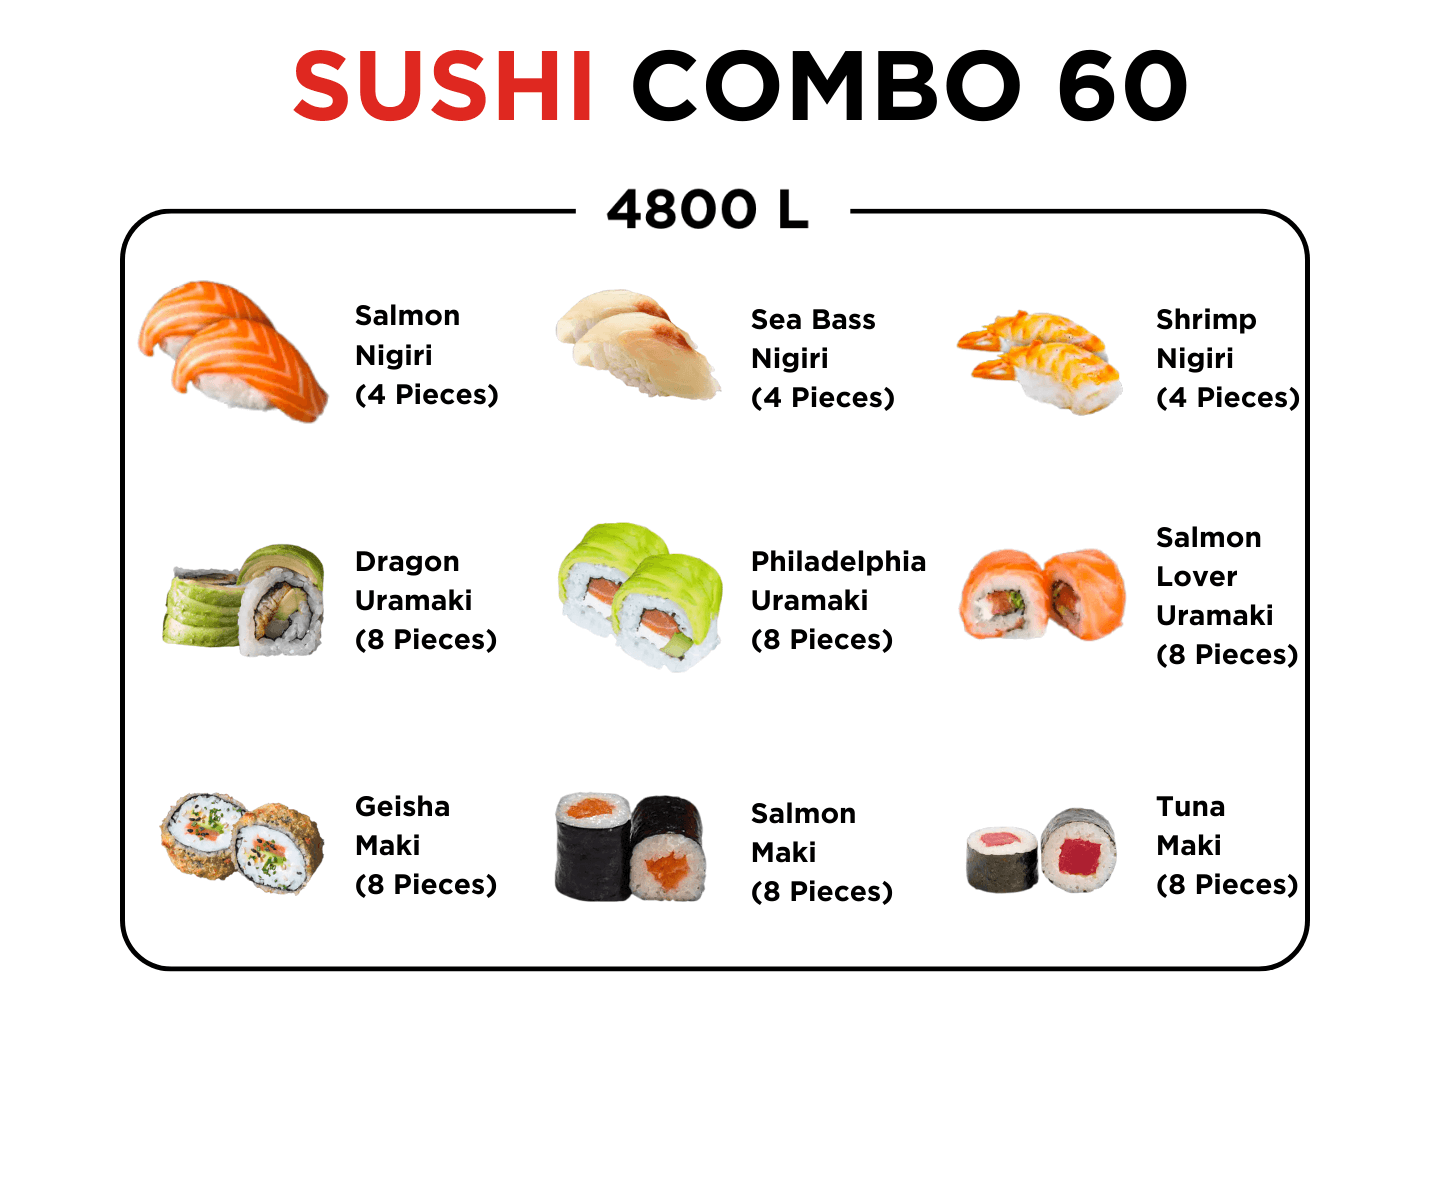 Sushi Combo 60